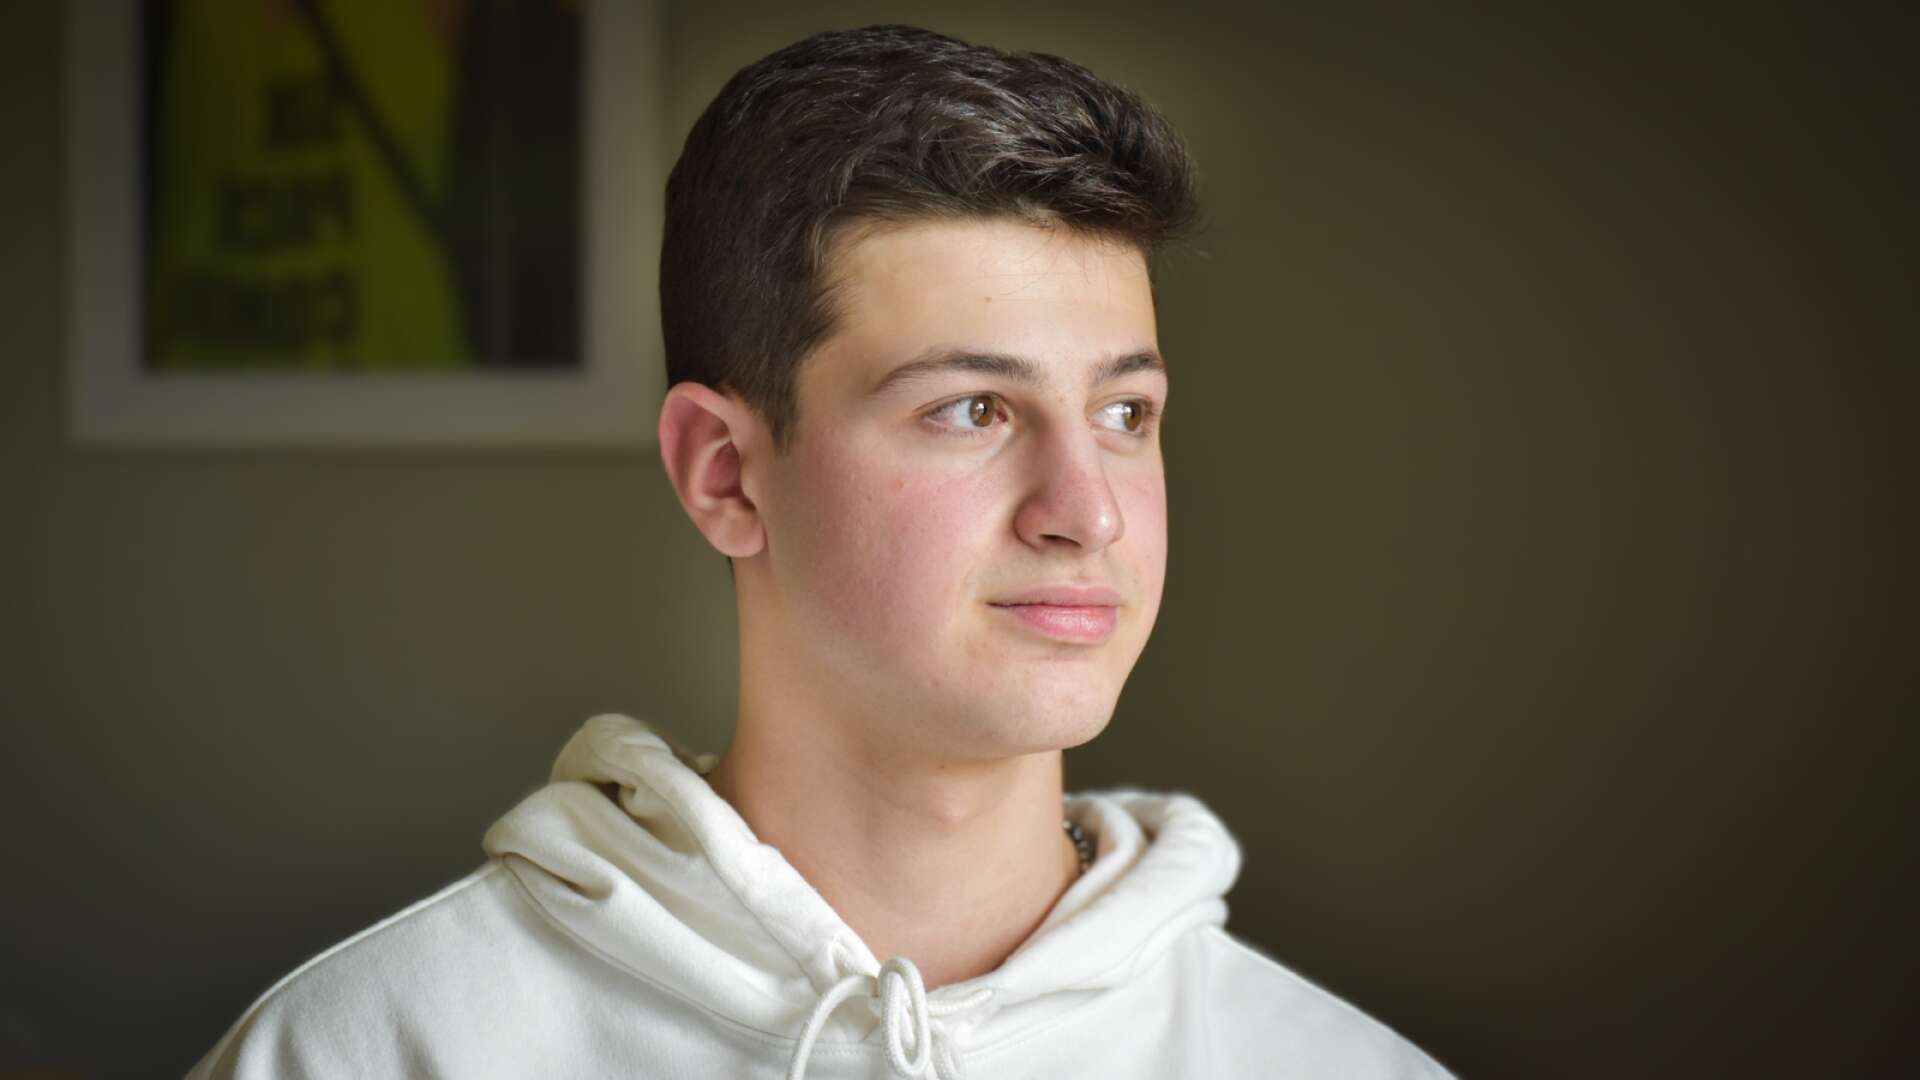 Mahmoud Ashram kom som syrisk flykting till Torsby med sin familj i början på 2014 och här de sedan blivit kvar.